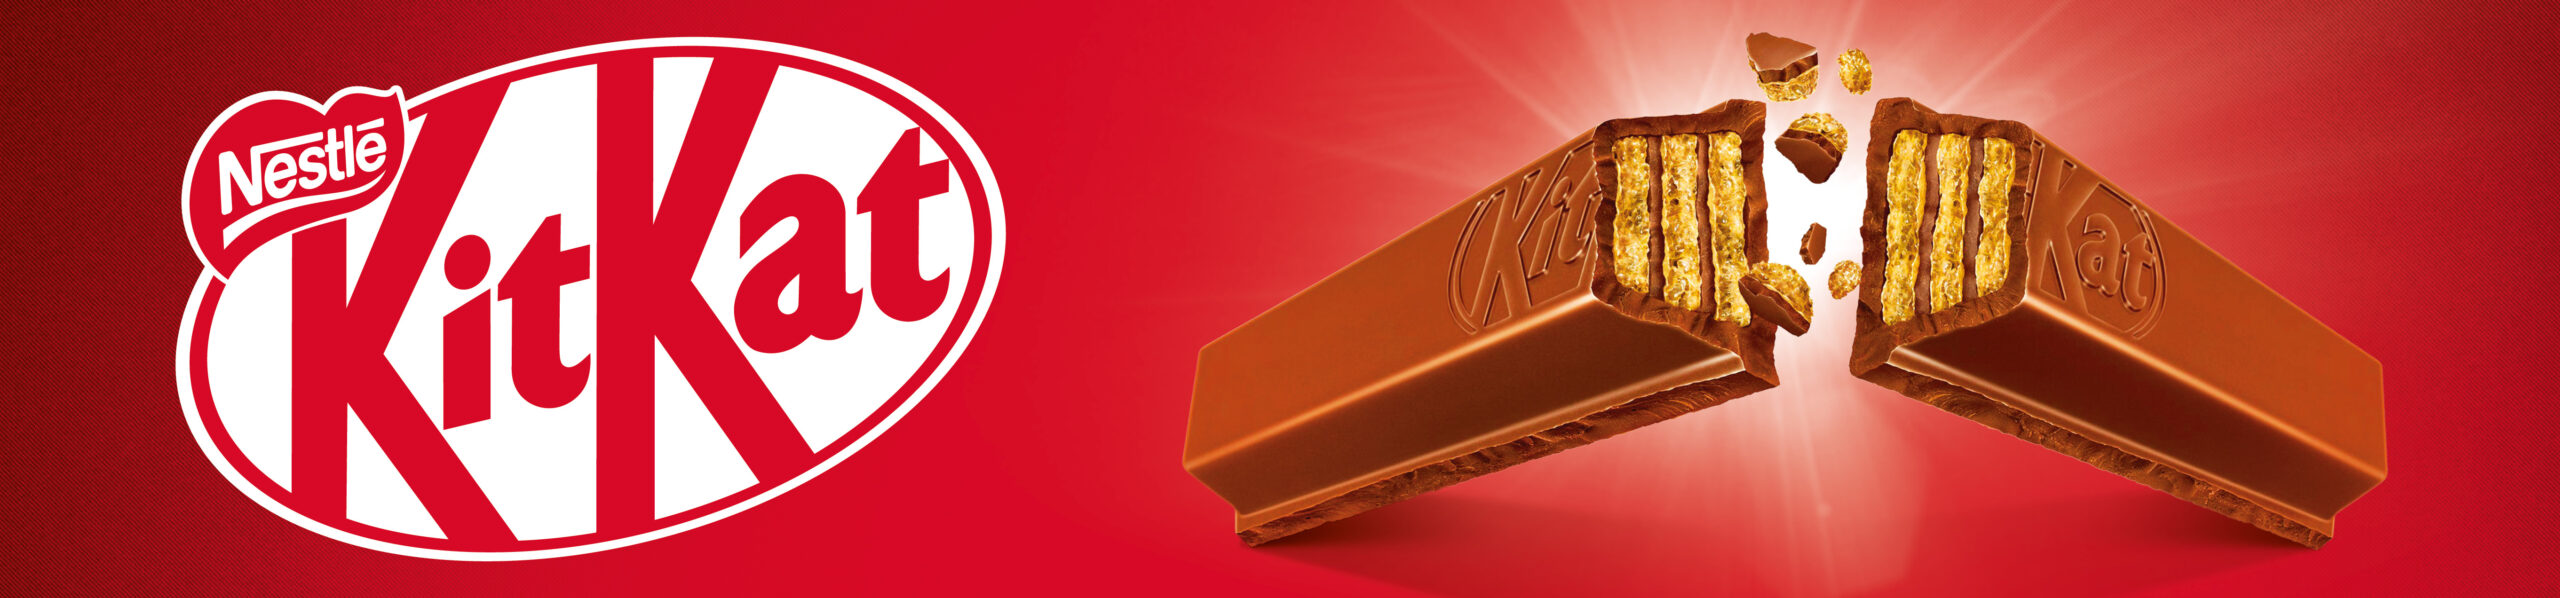 KitKat enseigne fronton devanture de magasin shop PLV Branding Logo barres de chocolat cassées